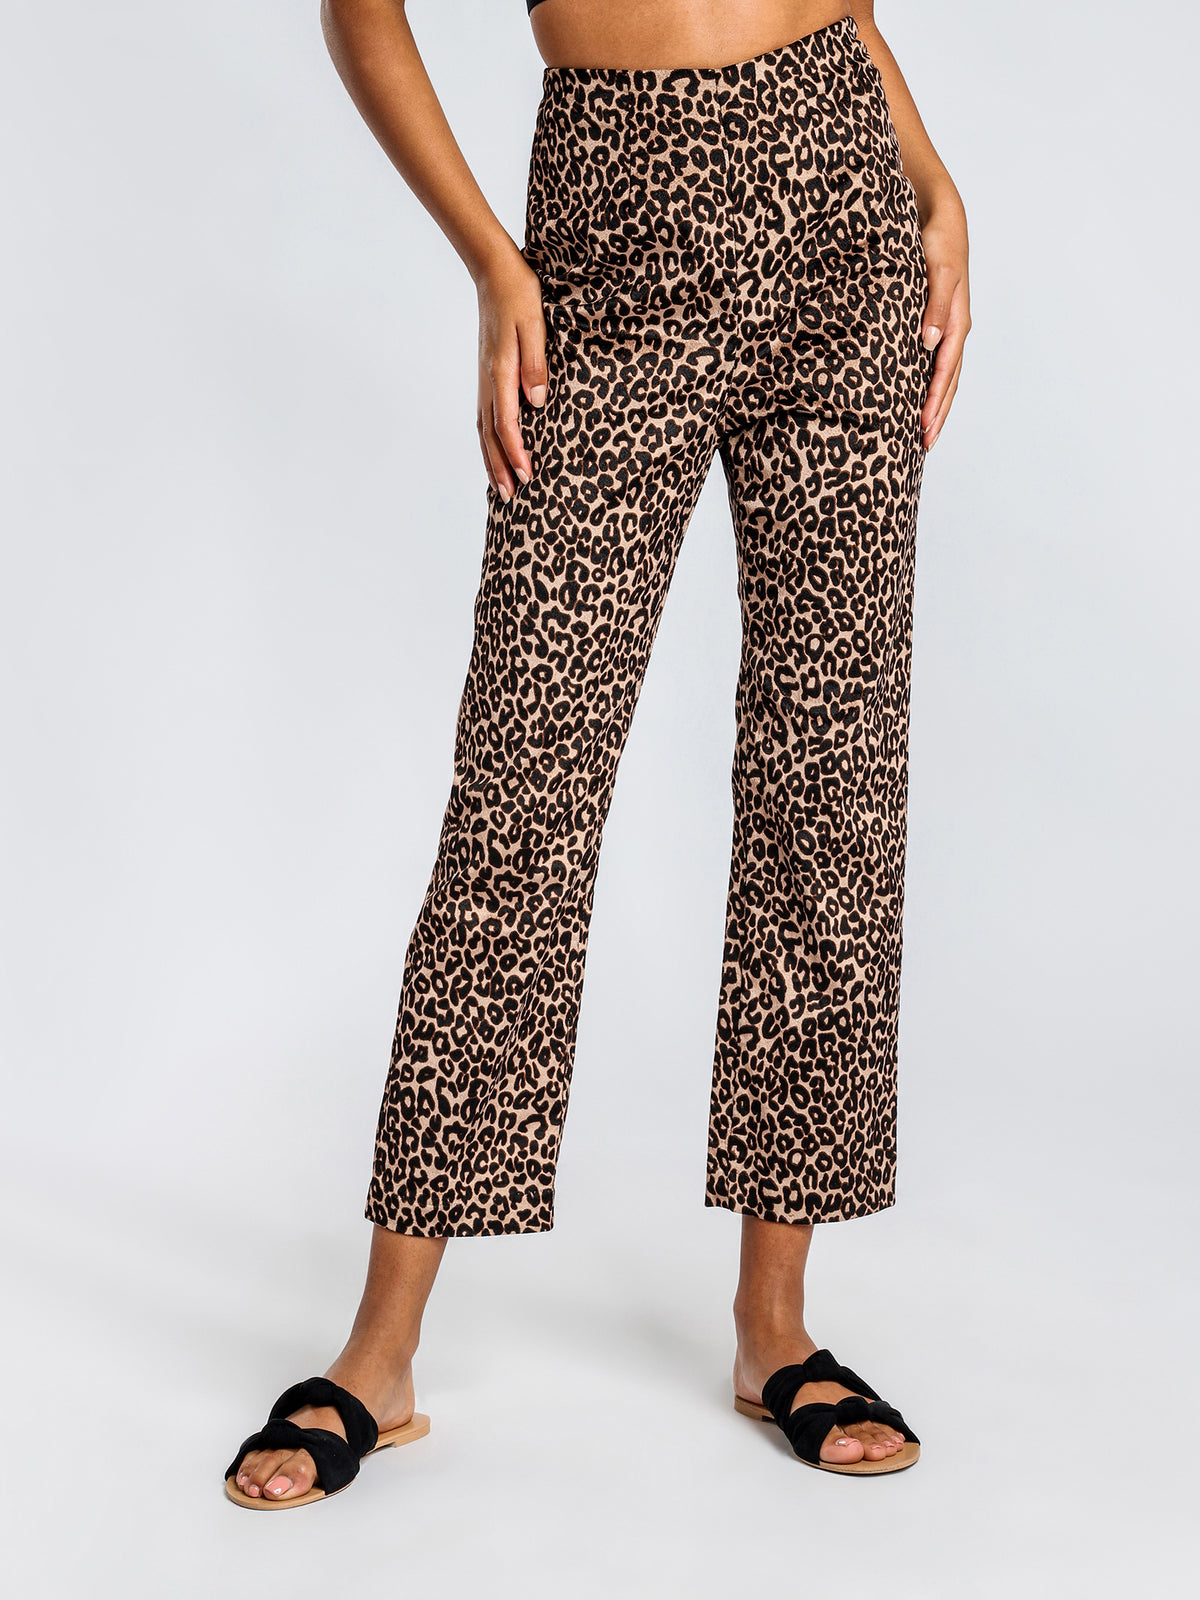 Sloan Pants in Leopard Print